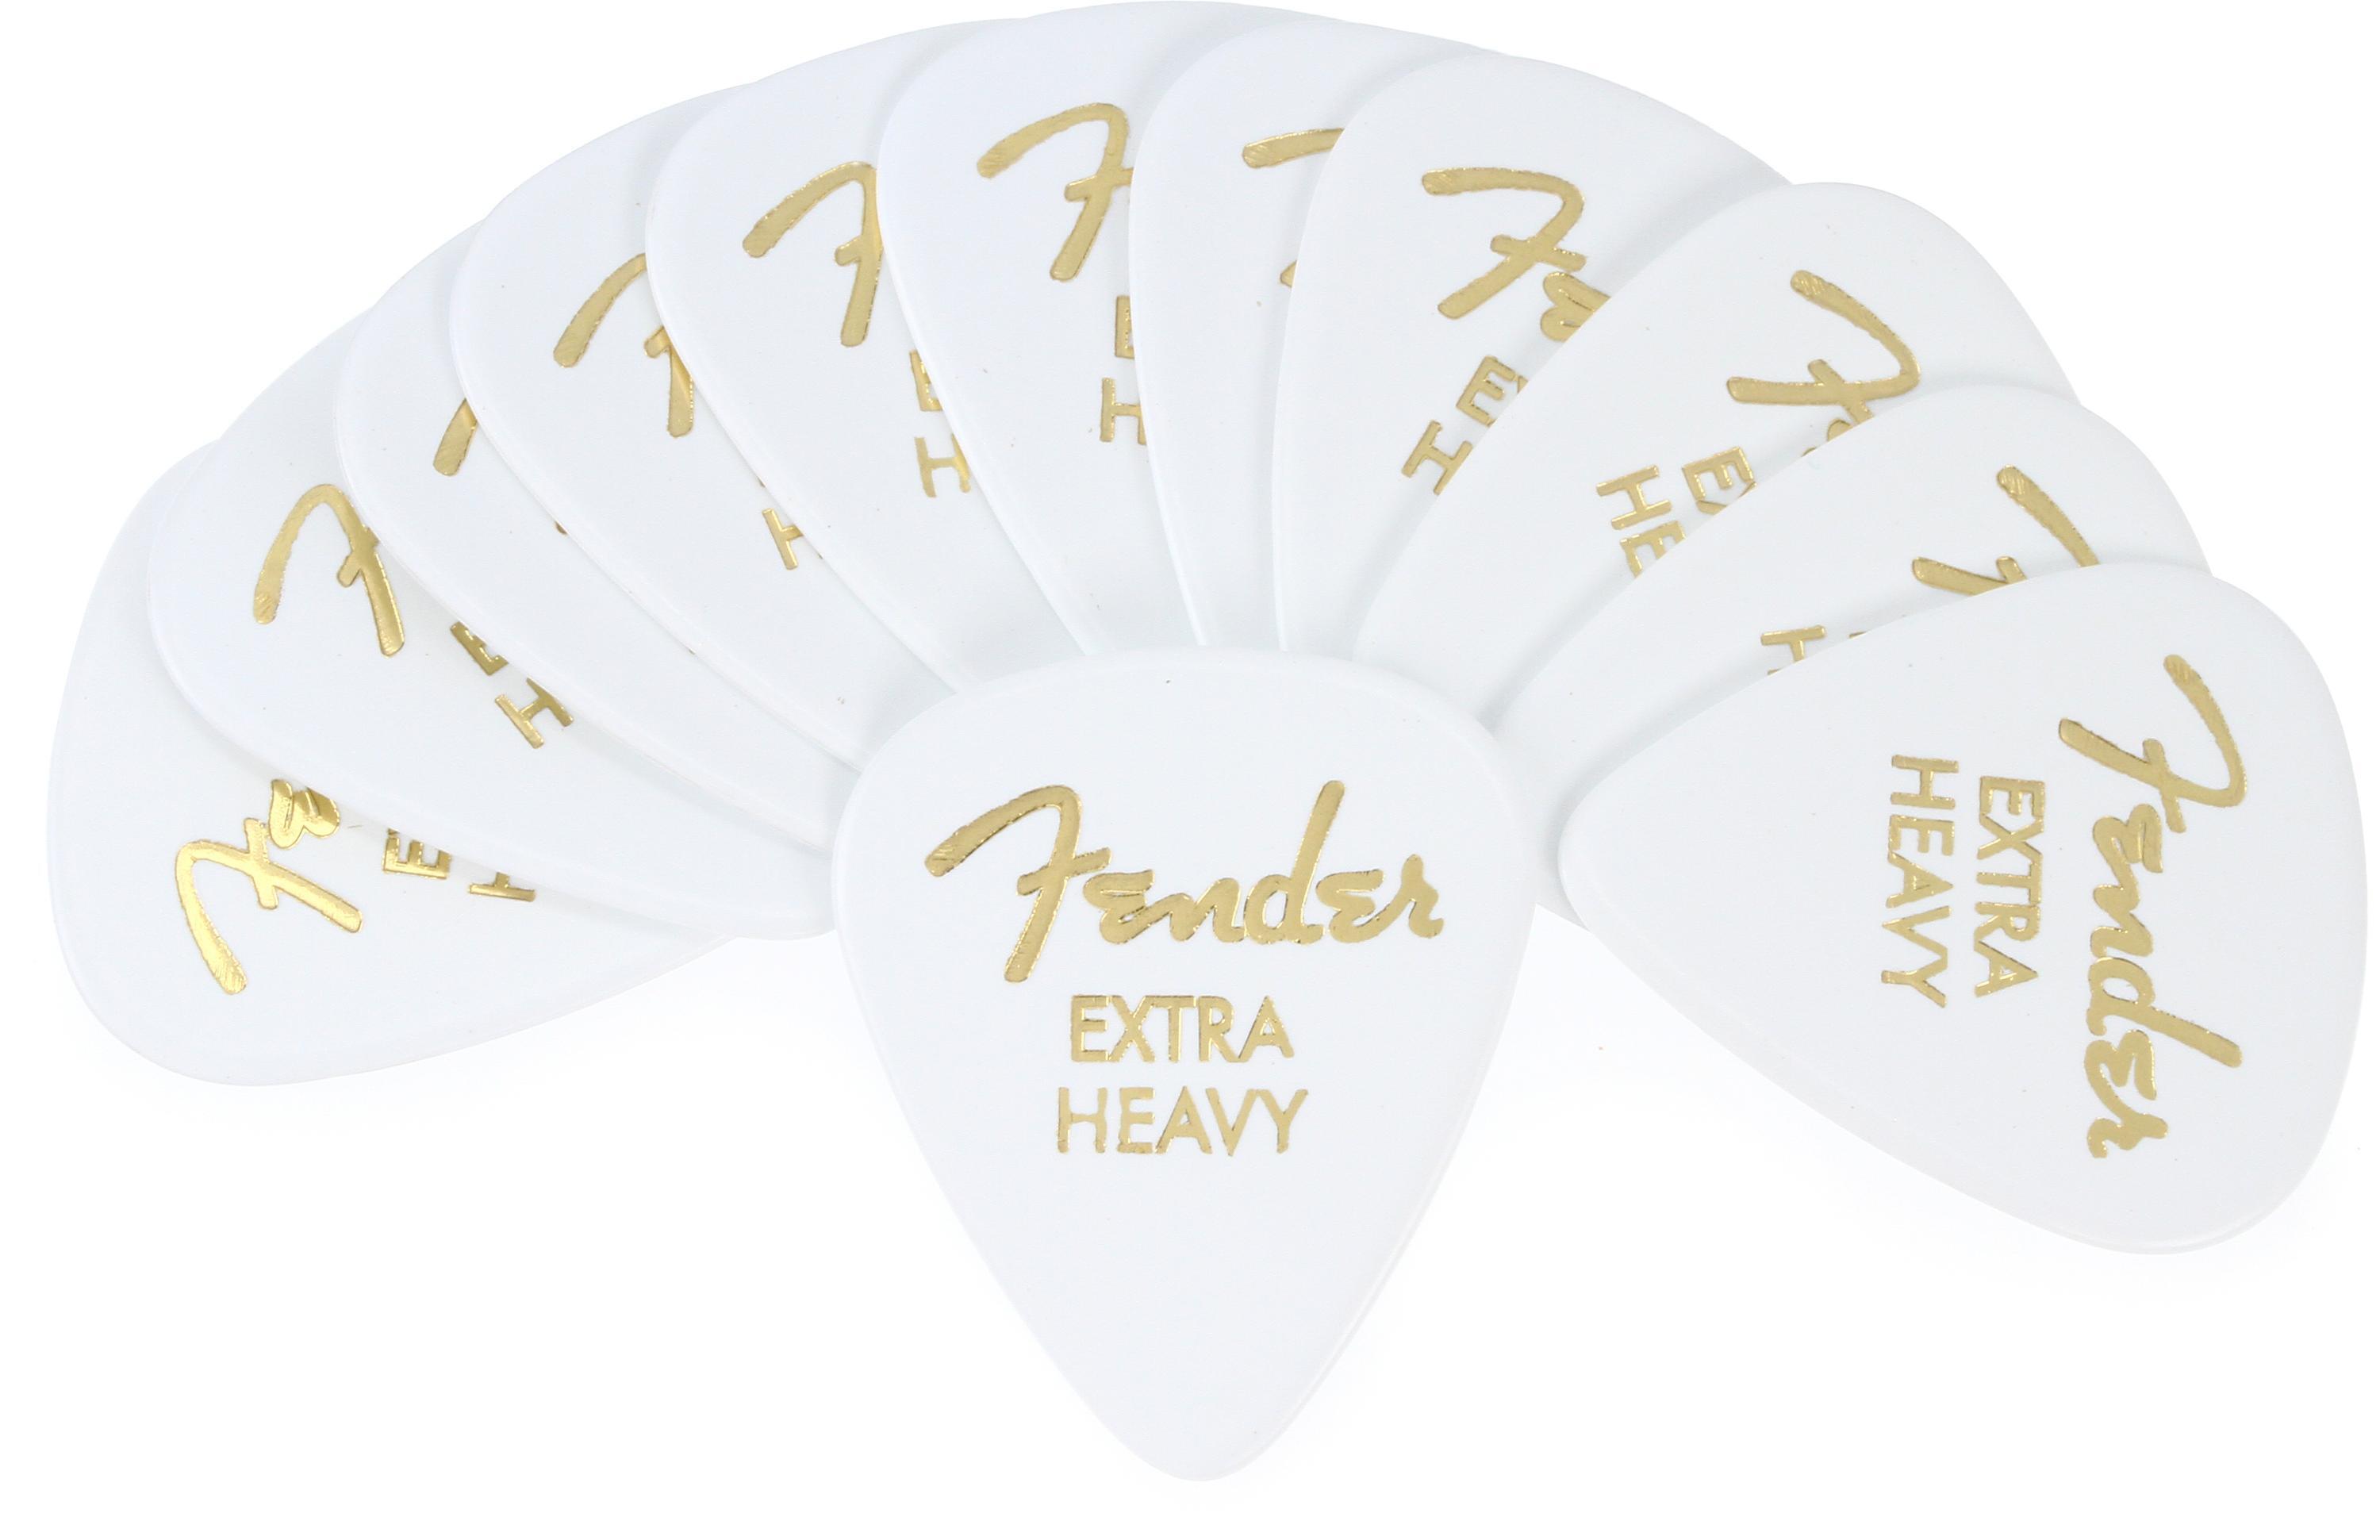 Fender 351 Premium Guitar Picks - Extra Heavy White 12-pack